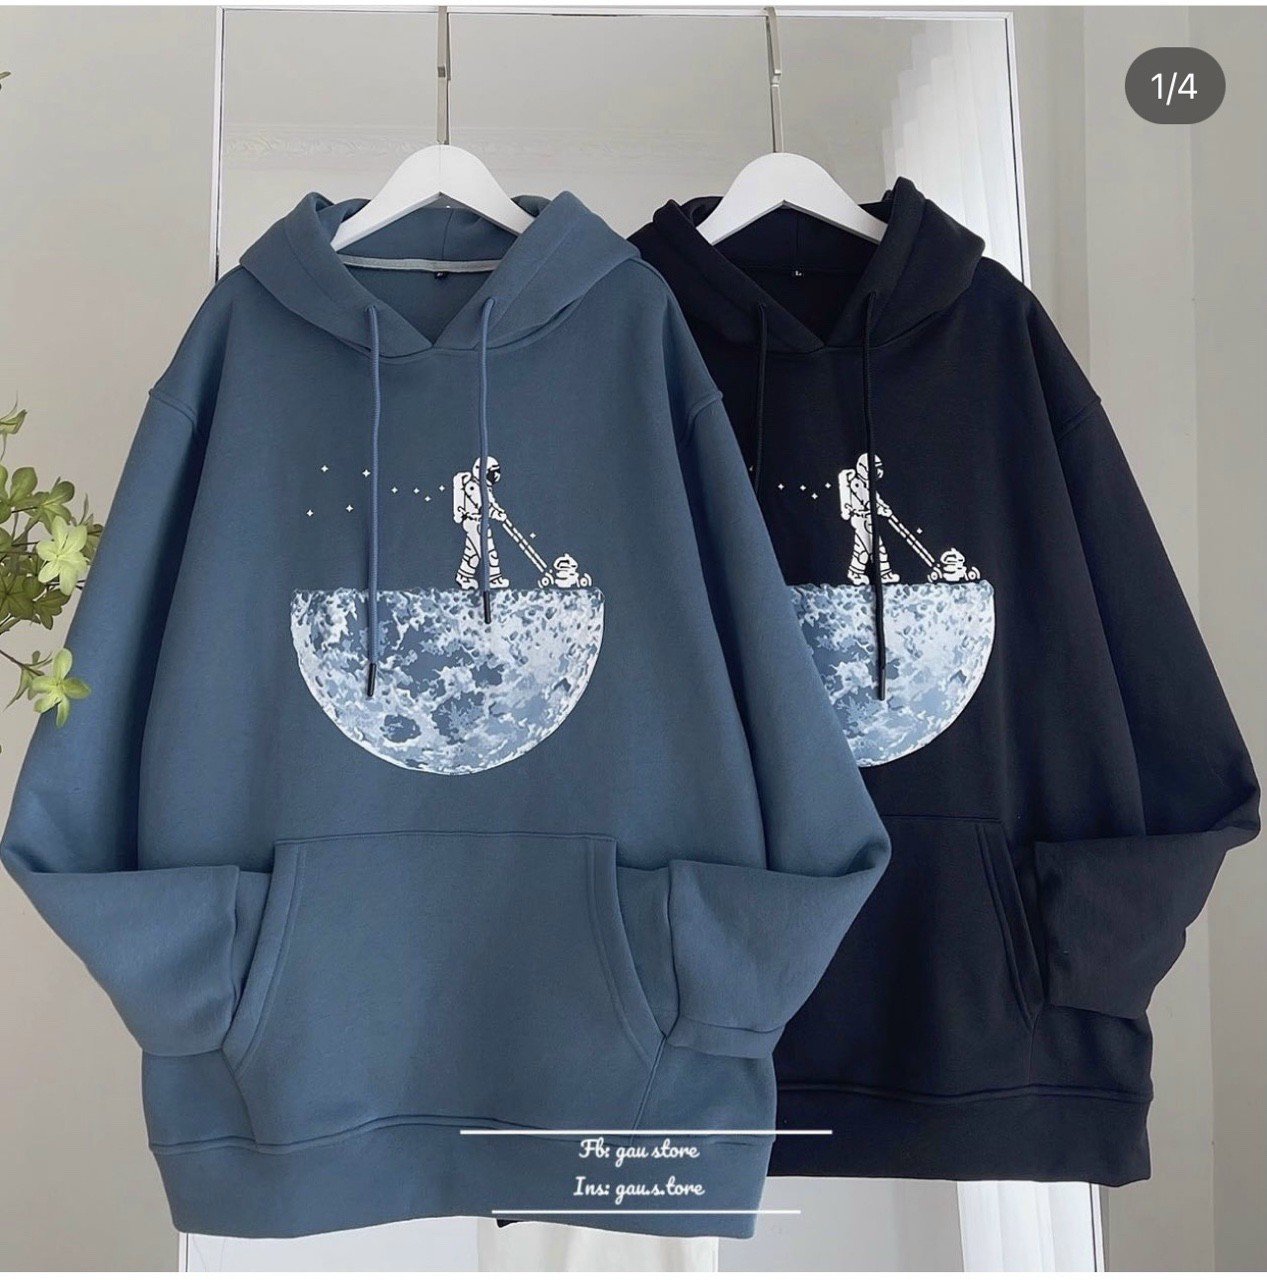 Áo hoodie chất nỉ nam nữ in nhiệt hình thủy thủ và mặt trăng,có 2 màu đen và xanh dương